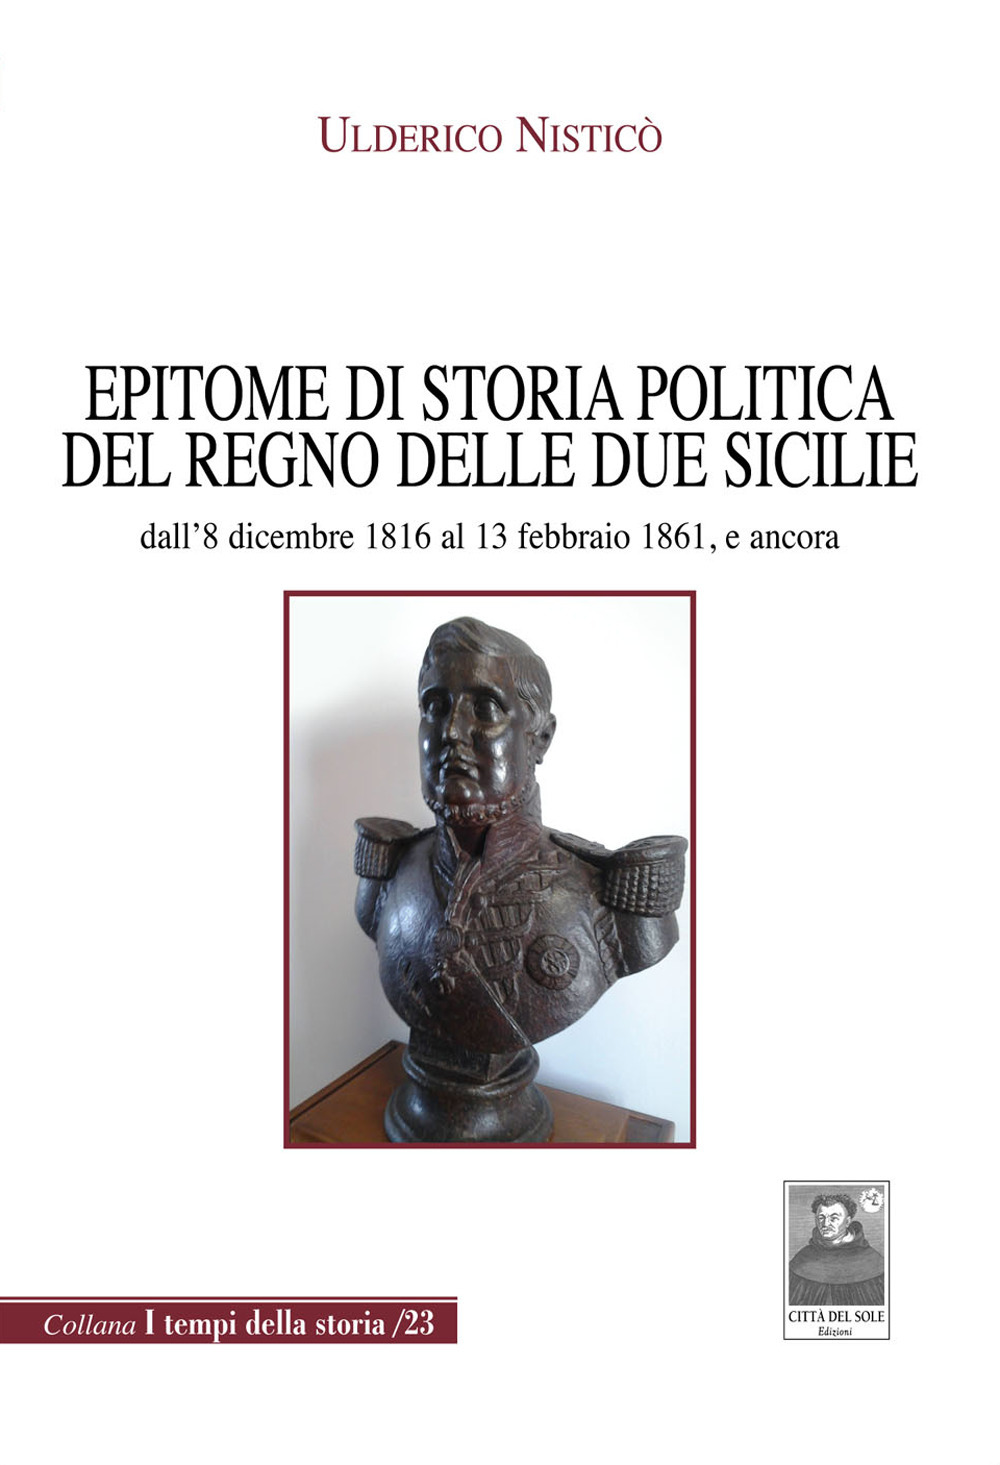 Epitome di storia politica del Regno delle Due Sicilie dall'8 dicembre 1816 al 13 febbraio 1861, e ancora